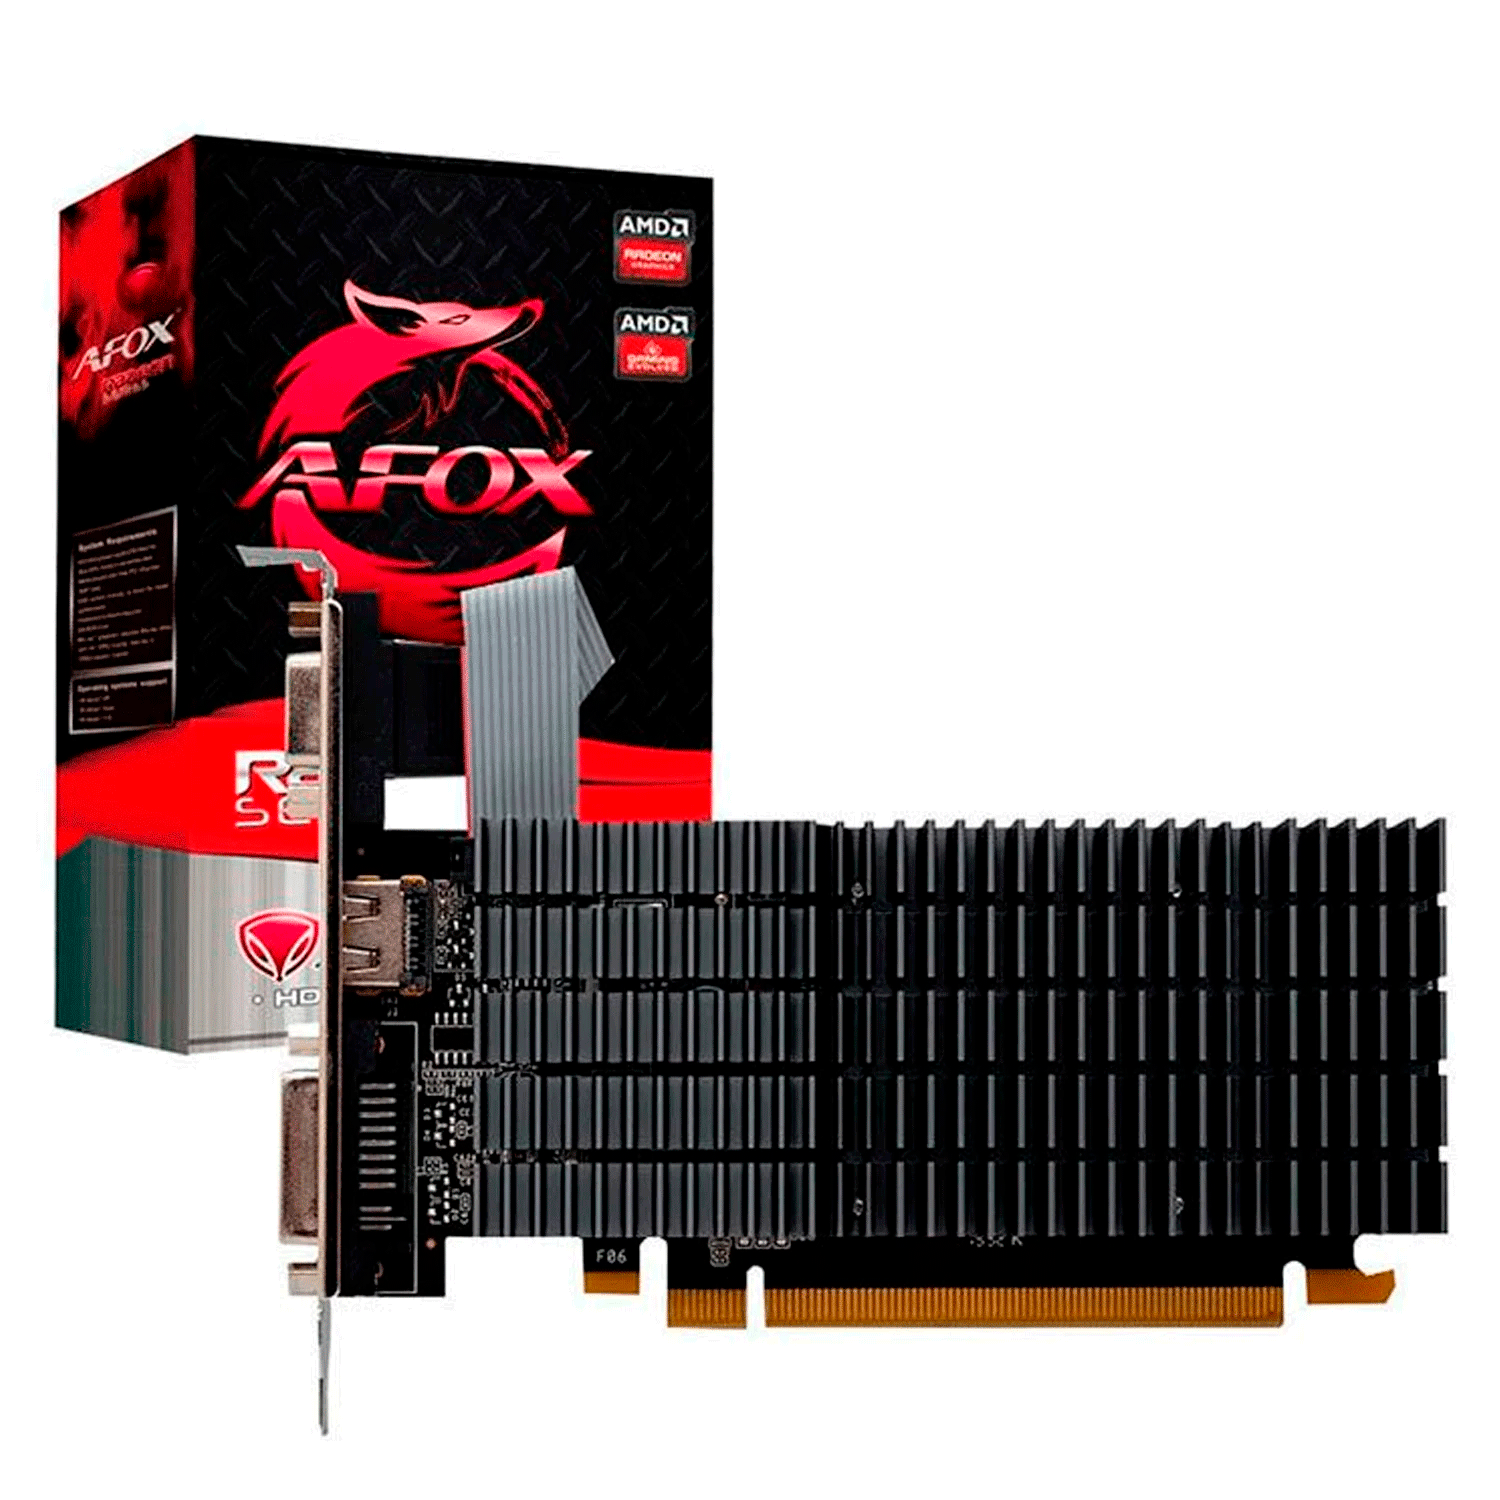 Placa de Vídeo Afox  Radeon R5-230 1GB DDR3 - AFR5230-1024D3L9-V2